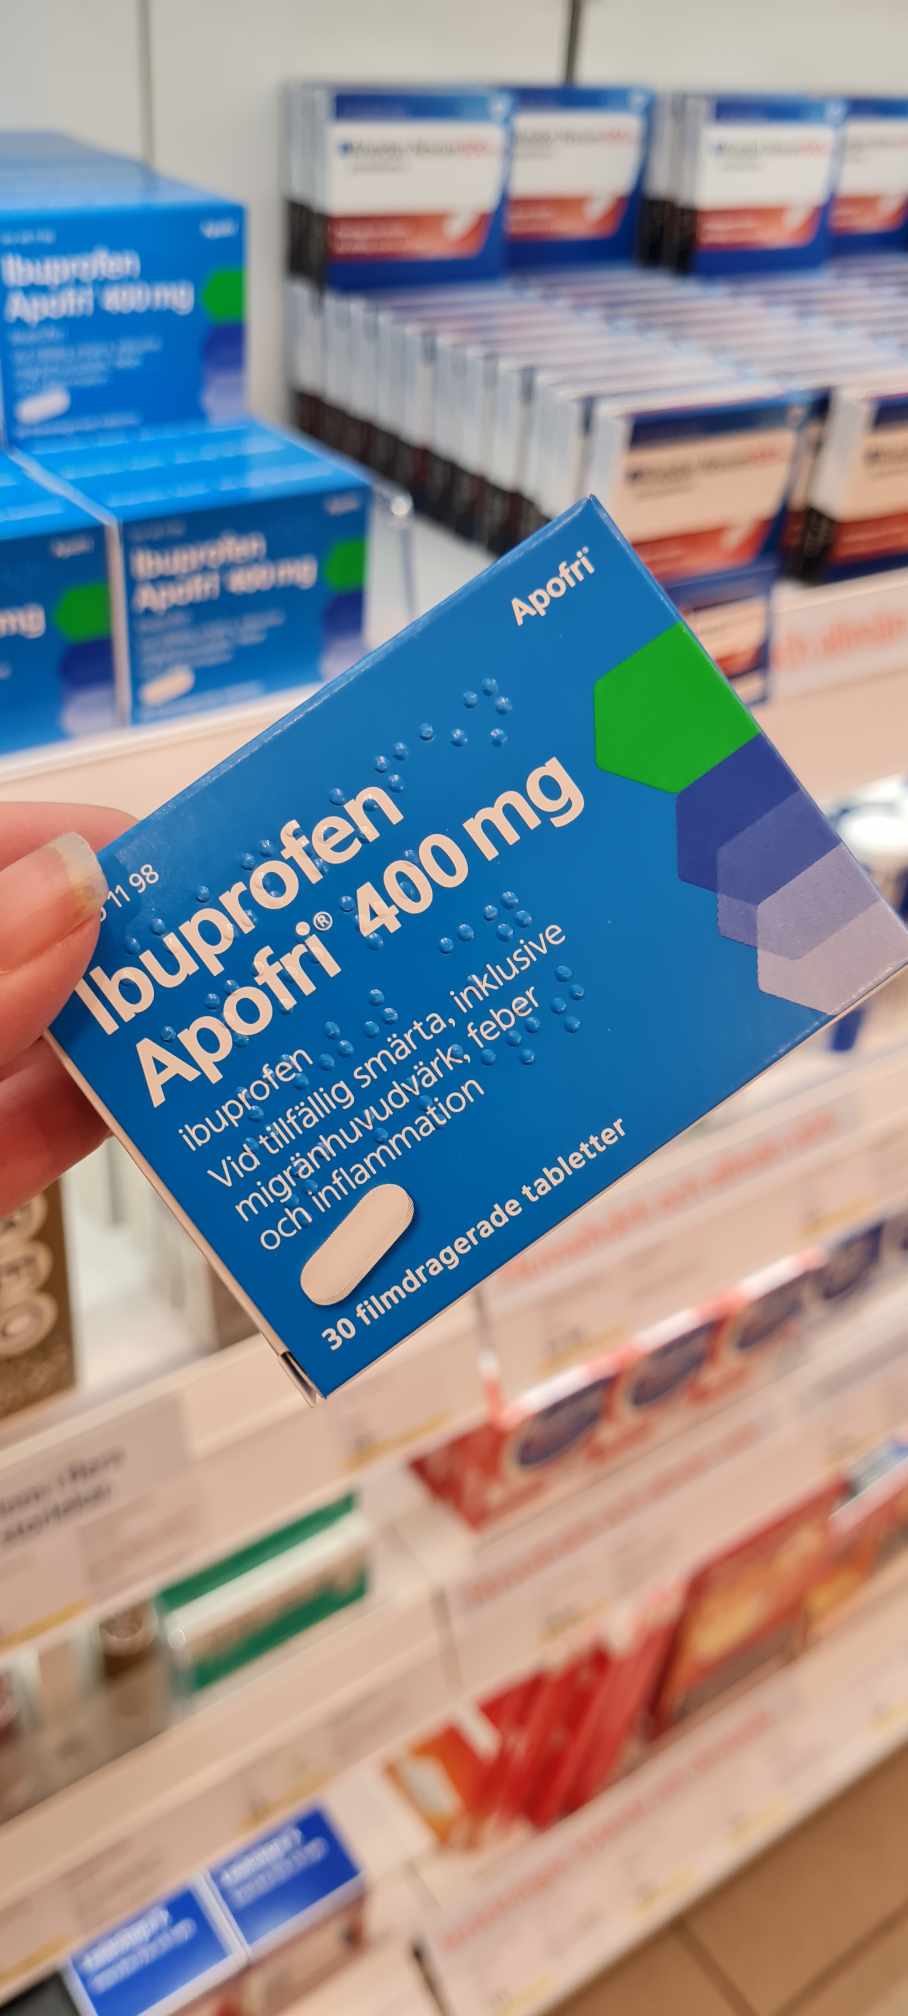 Vilka biverkningar har Ibuprofen Apofri 400 mg?